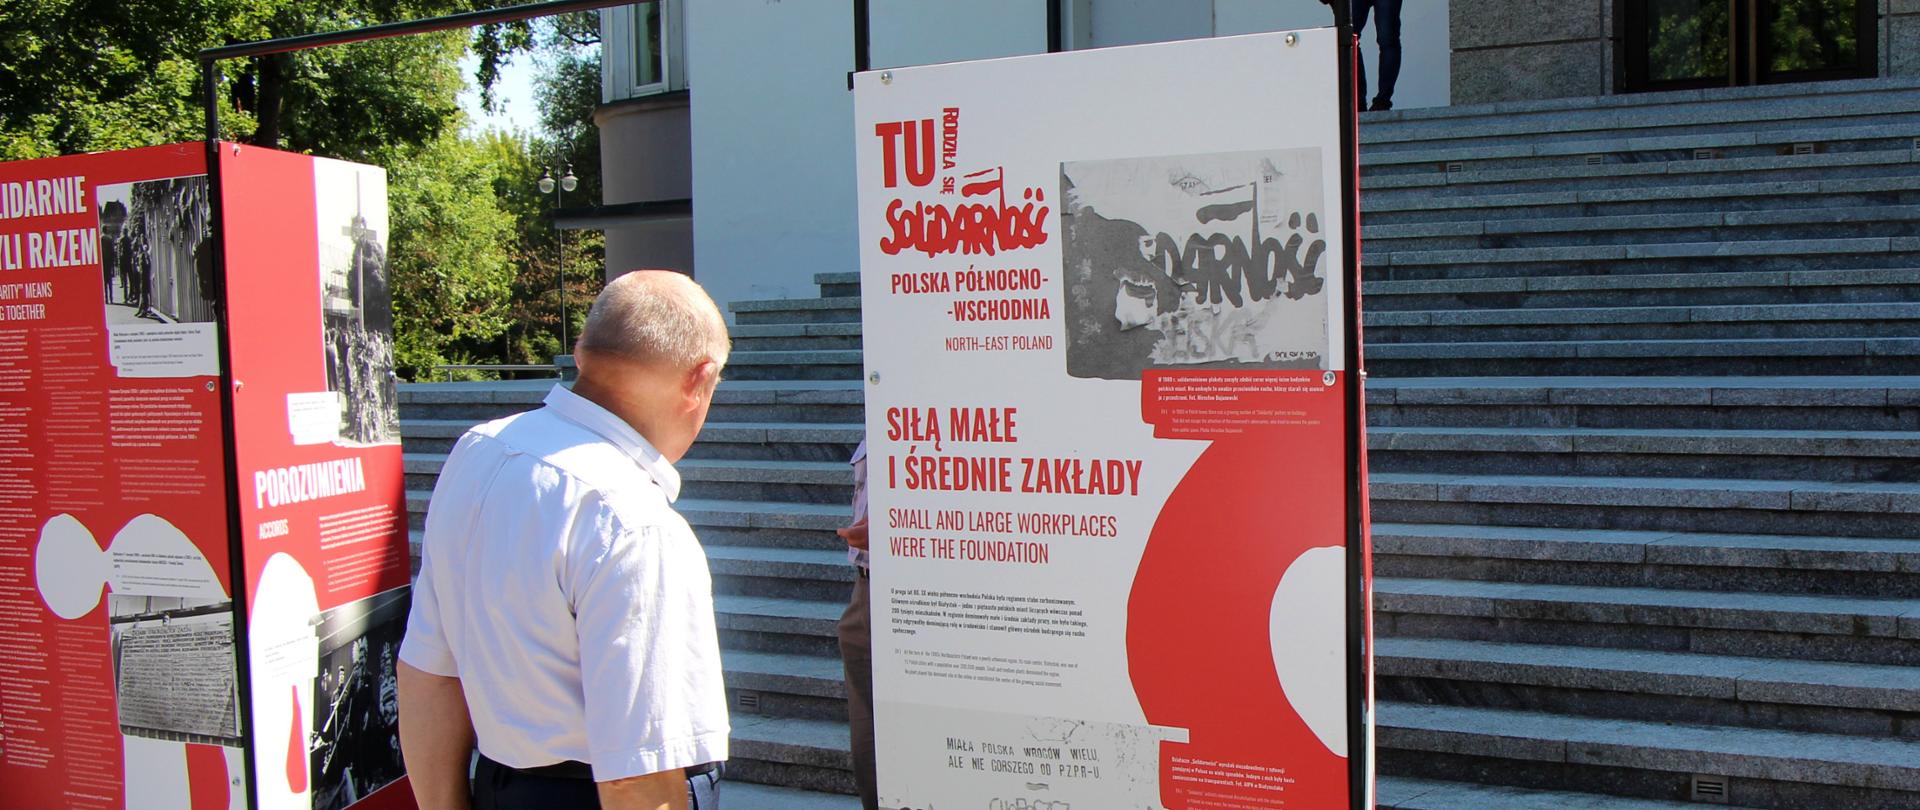 Otwarcie wystawy "Tu rodziła się Solidarność" w Białymstoku